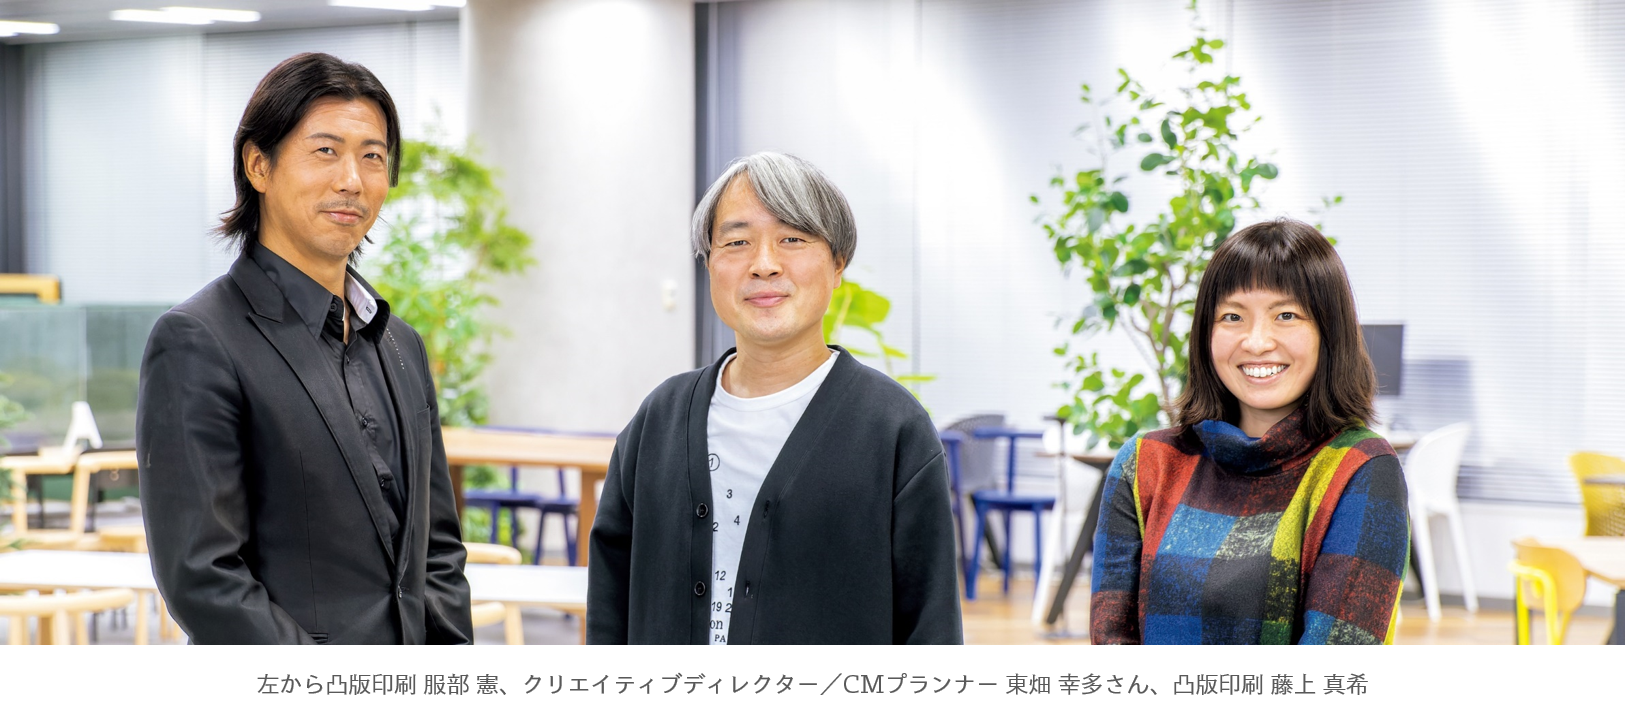 左から凸版印刷 服部憲、クリエイティブディレクター 東畑幸多さん、凸版印刷 藤上真希